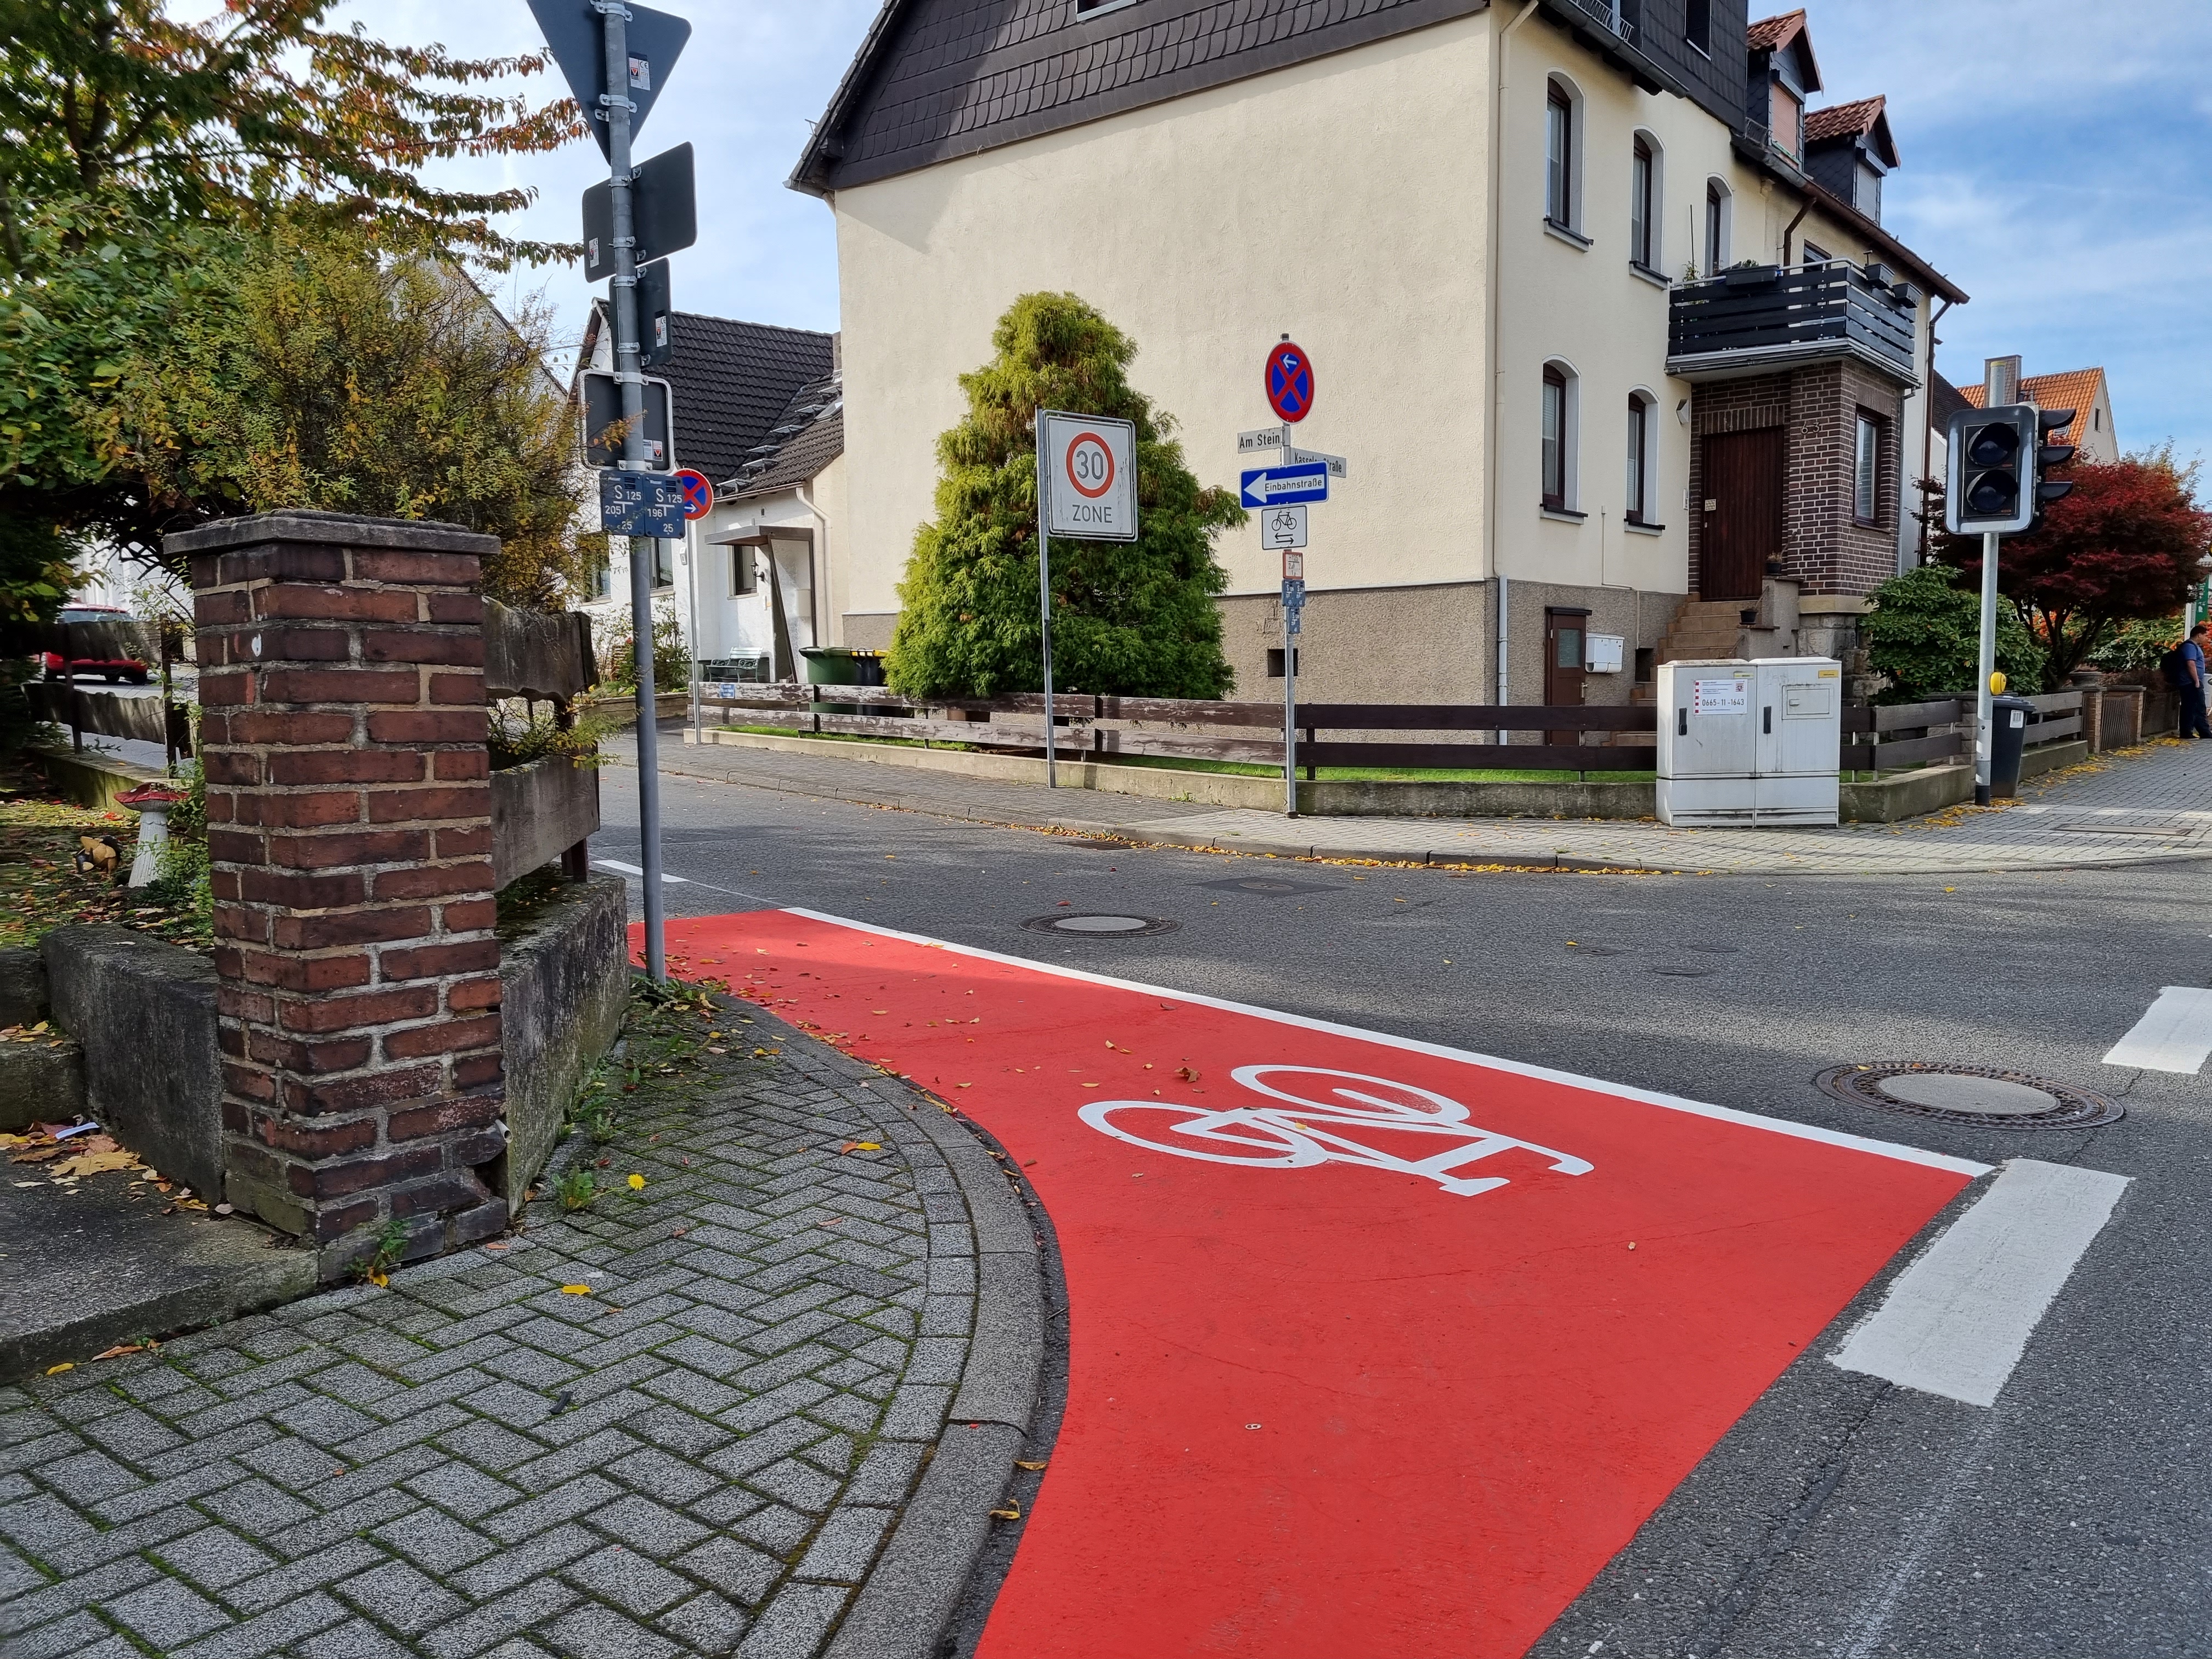 Die rote Markierung schafft eine sichere Aufstellzone für die entgegenkommenden Radfahrenden und Orientierungshilfe für alle Verkehrsteilnehmenden.